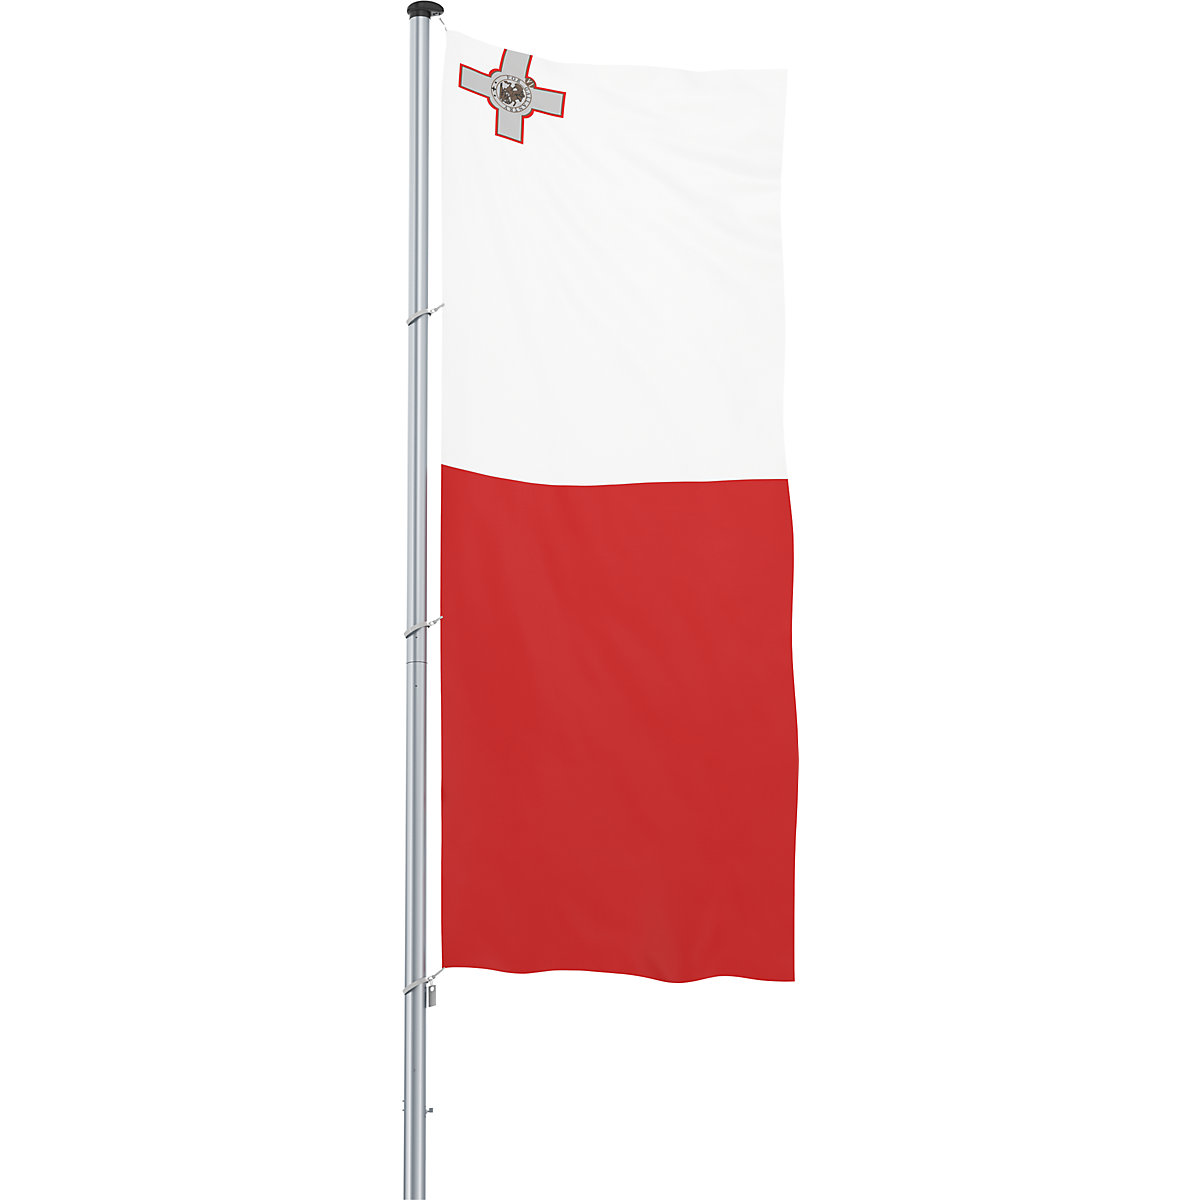 Flaga/flaga państwowa – Mannus, format 1,2 x 3 m, Malta-26